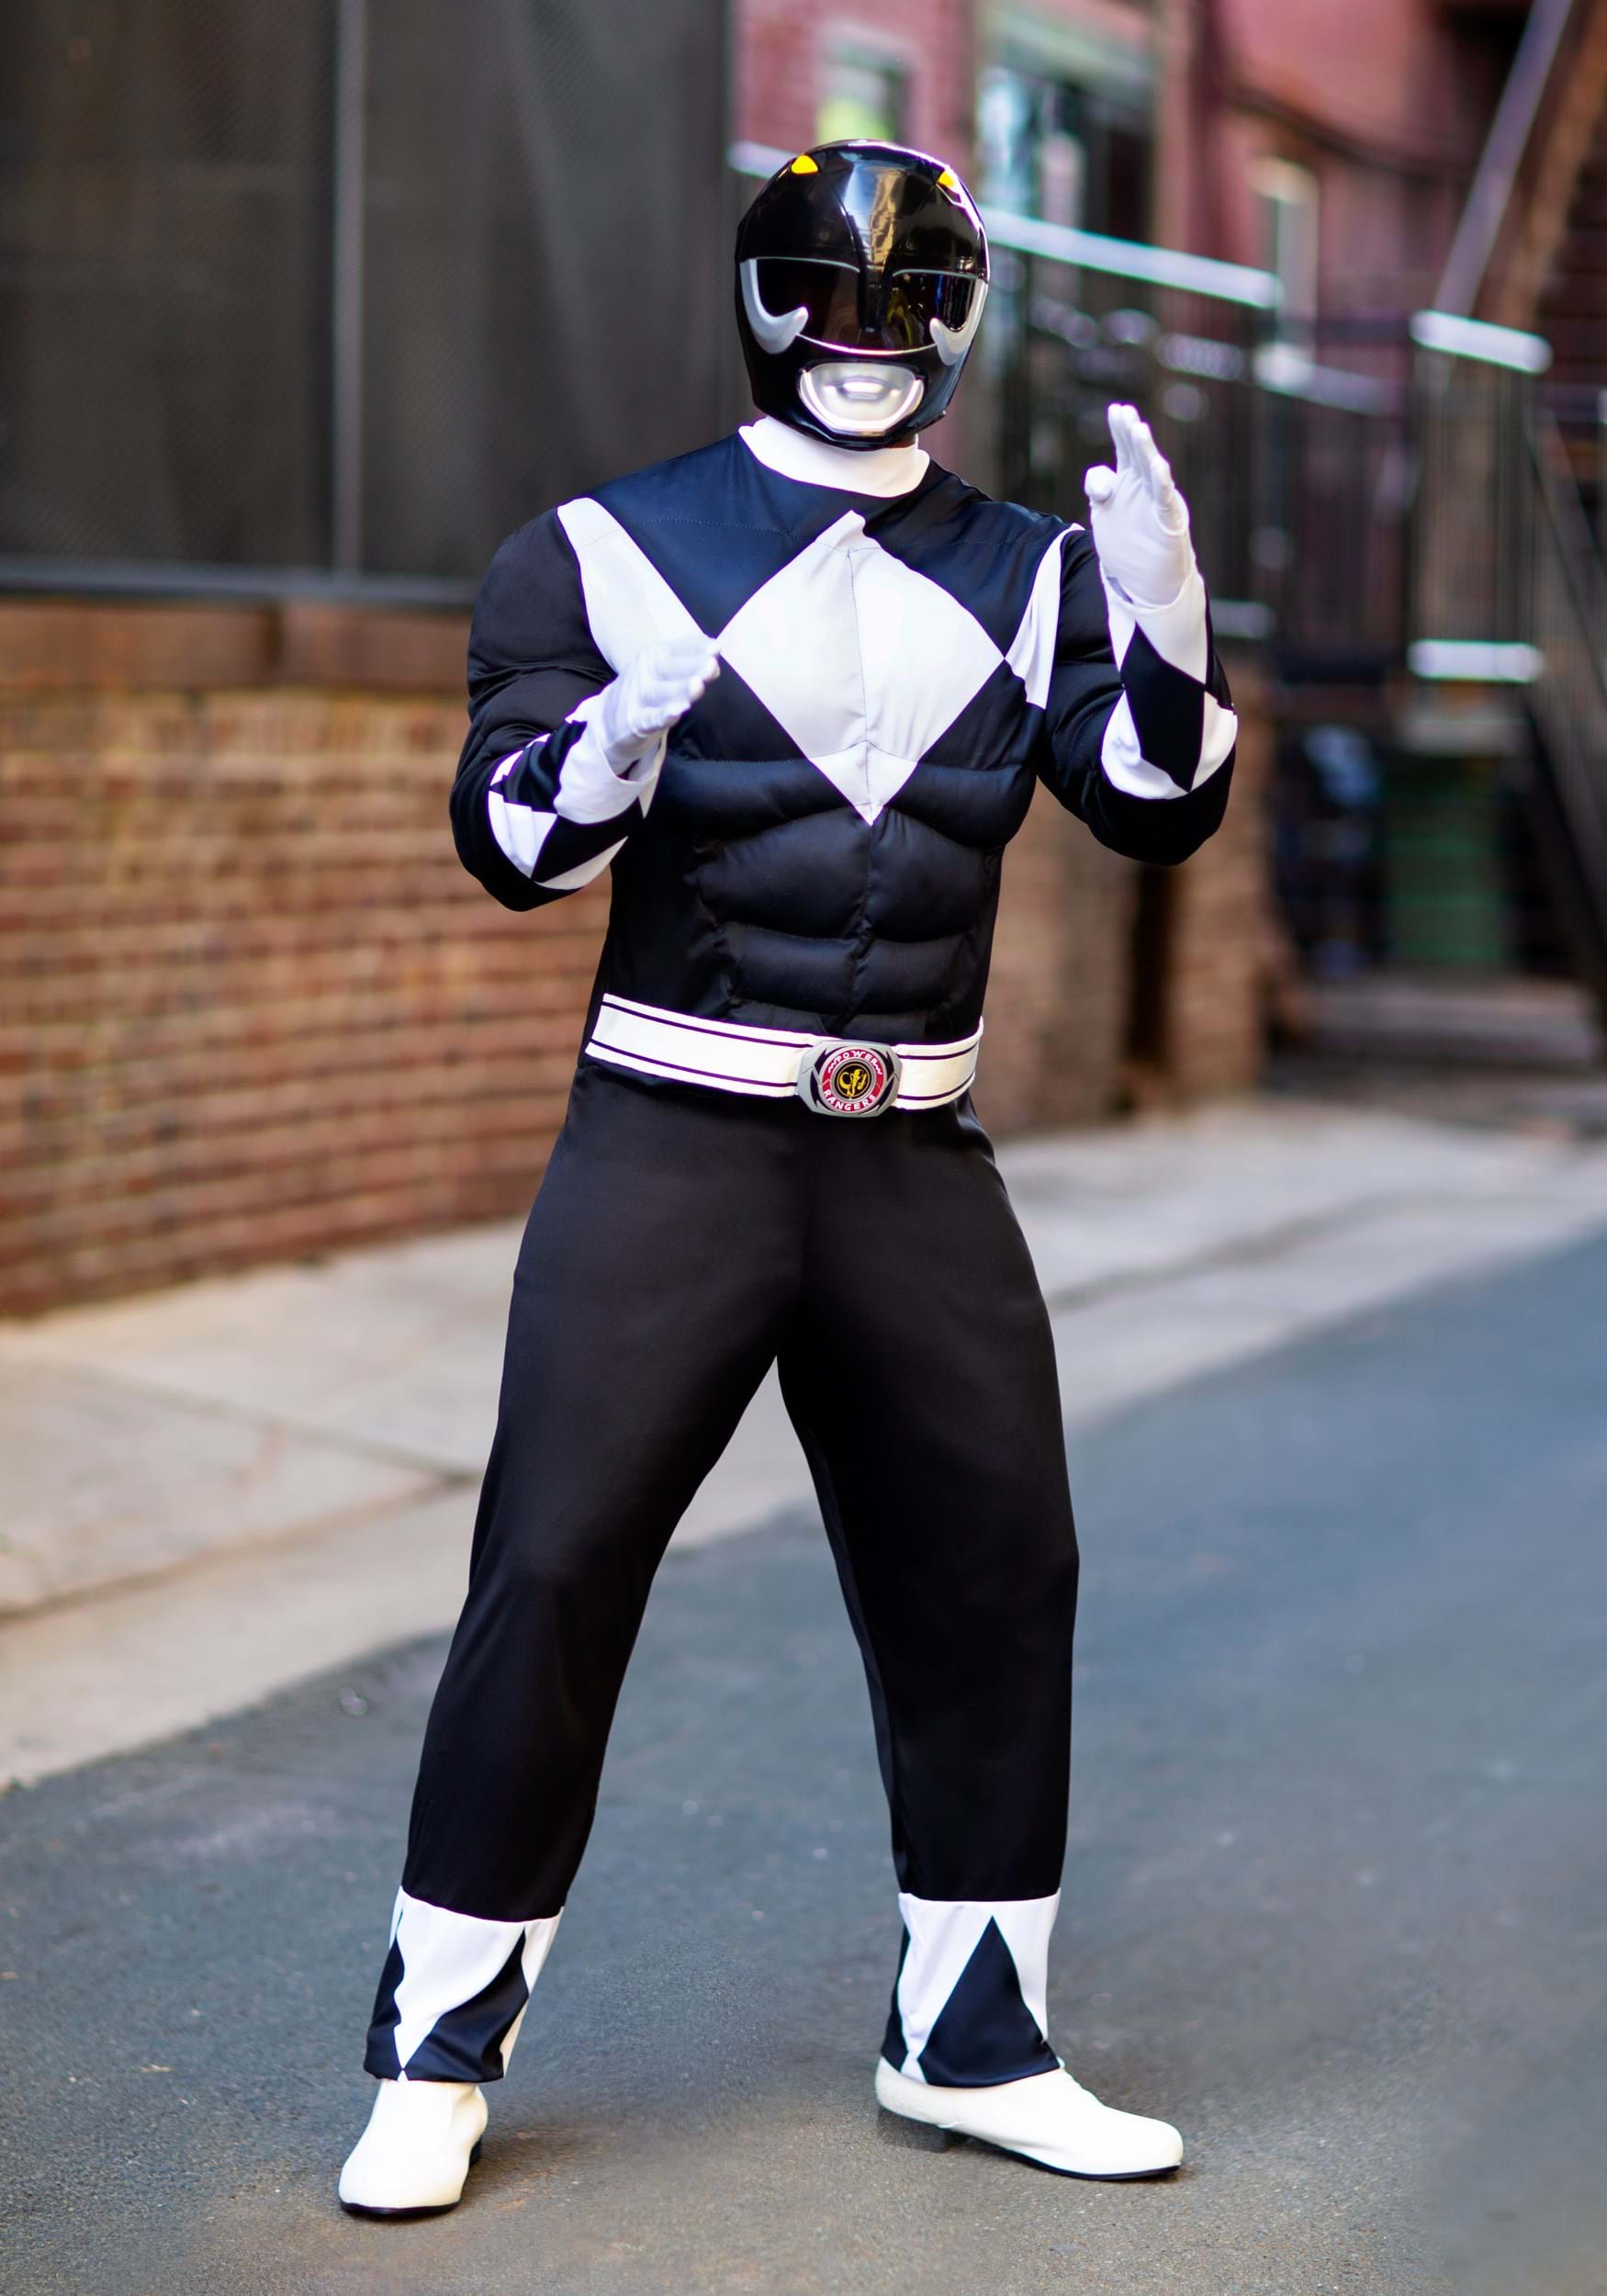 Black power ranger costume